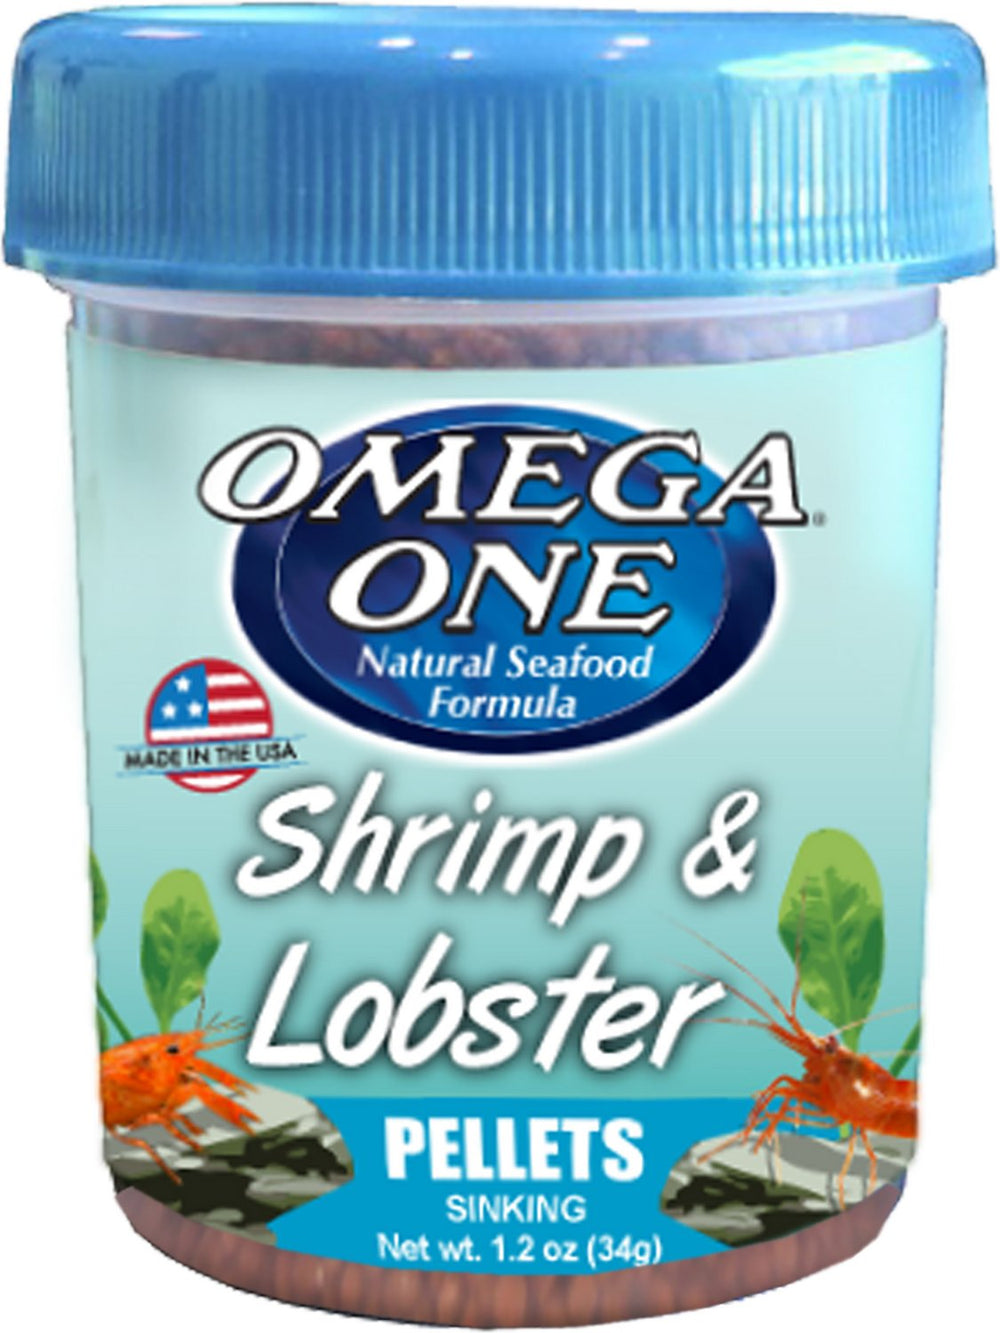 Omega One Shrimp & Lobster Pellets